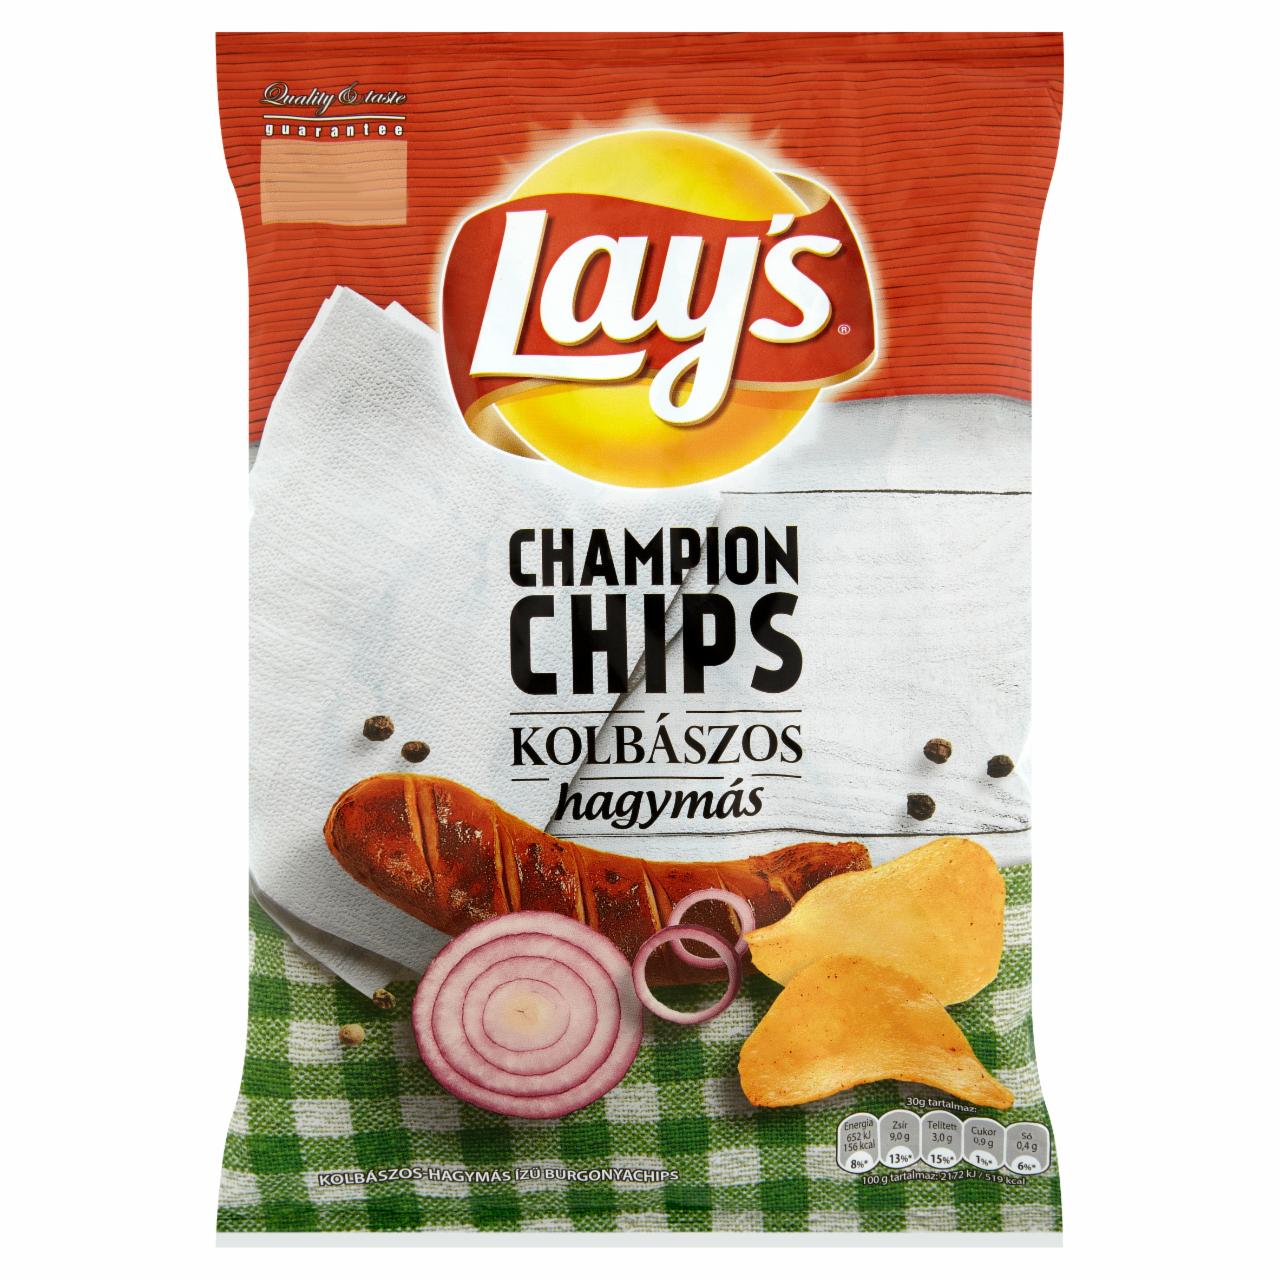 Képek - Lay's Champion Chips kolbászos-hagymás ízű burgonyachips 77 g